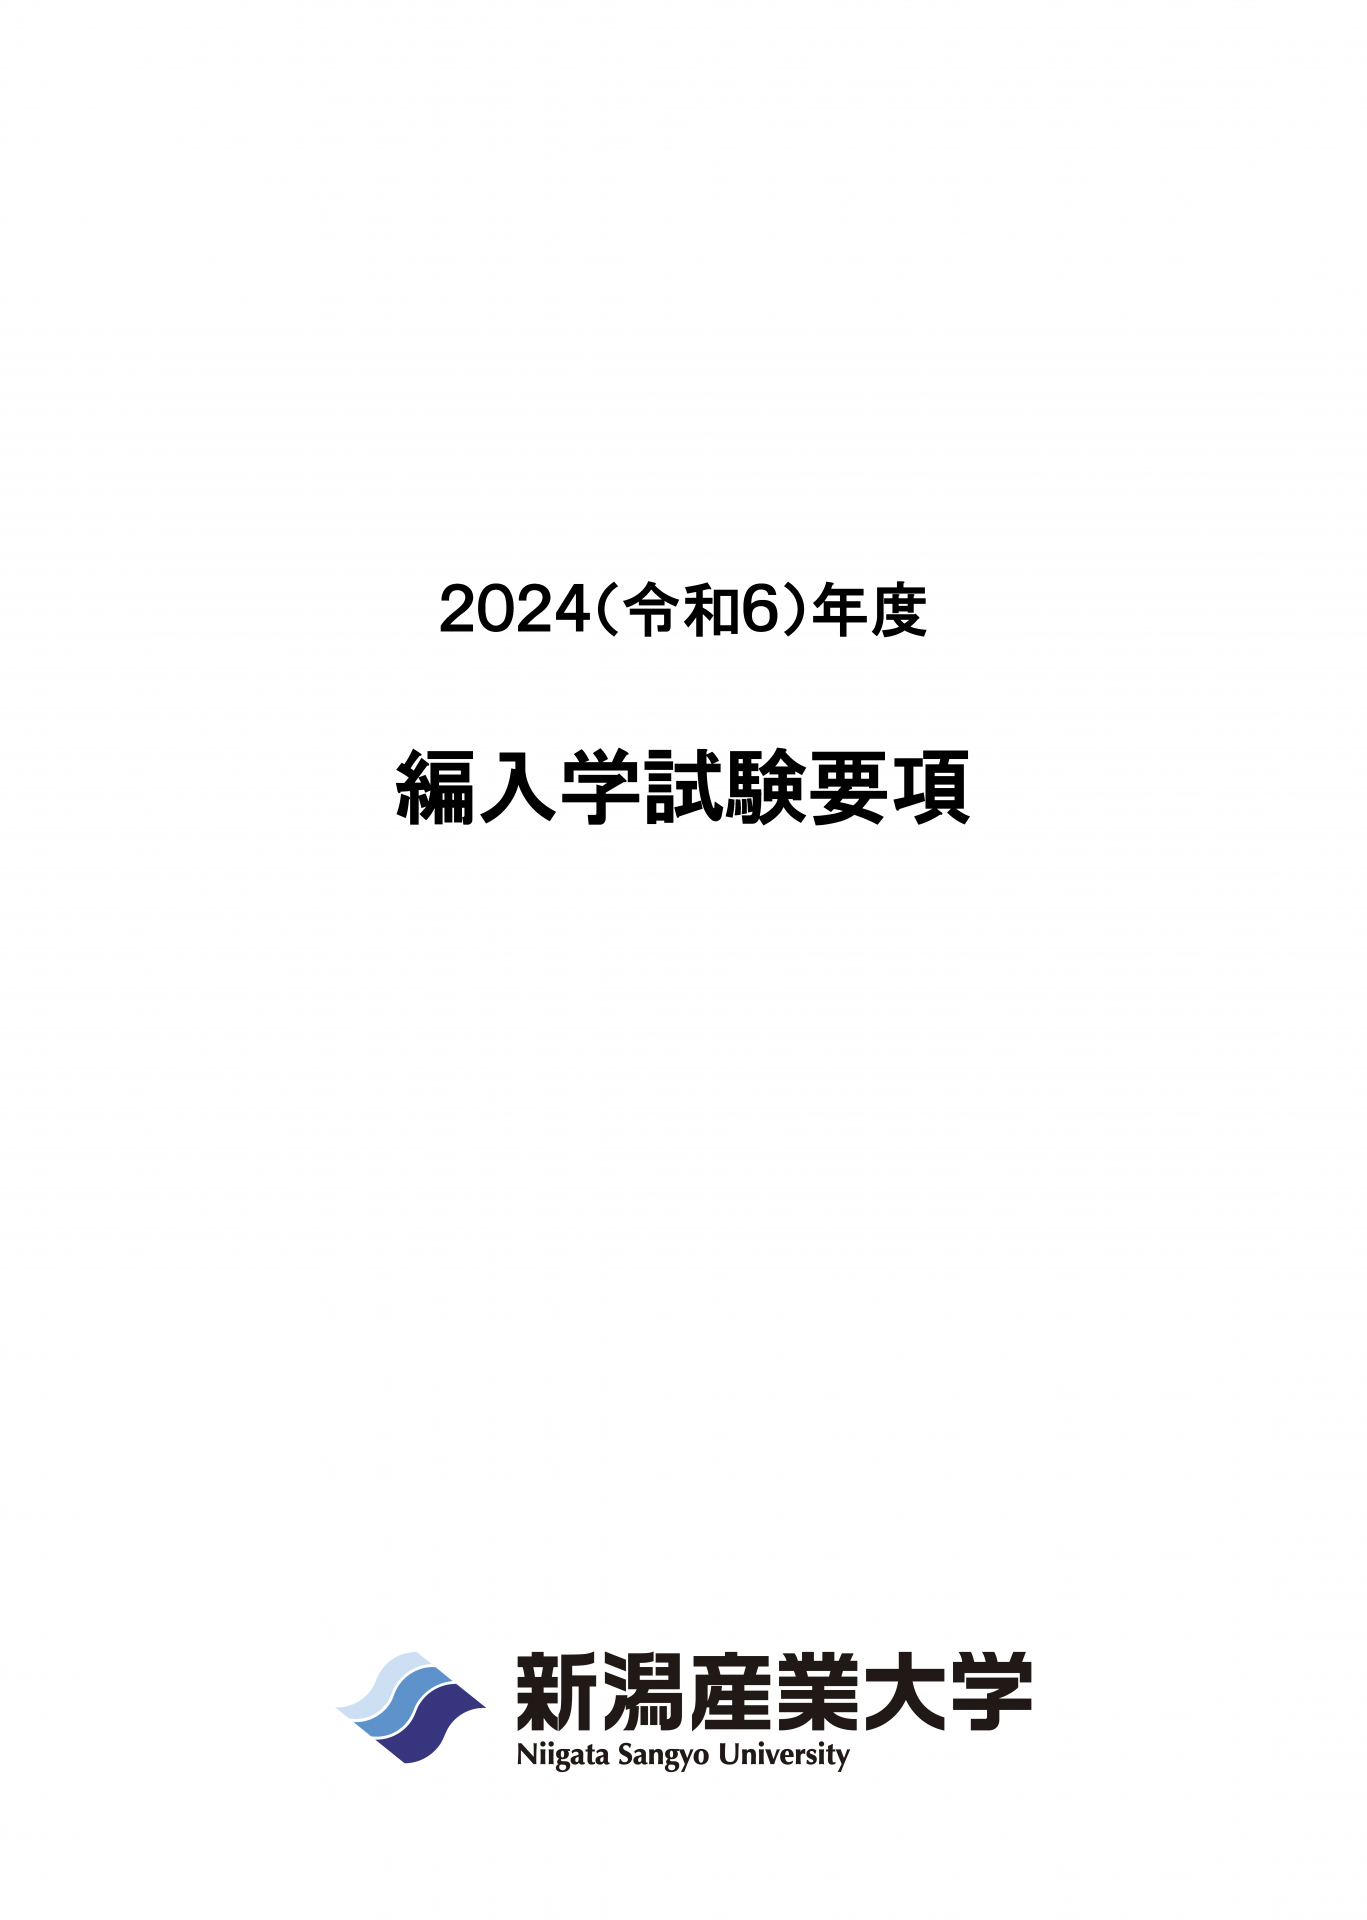 2024編入学試験要項